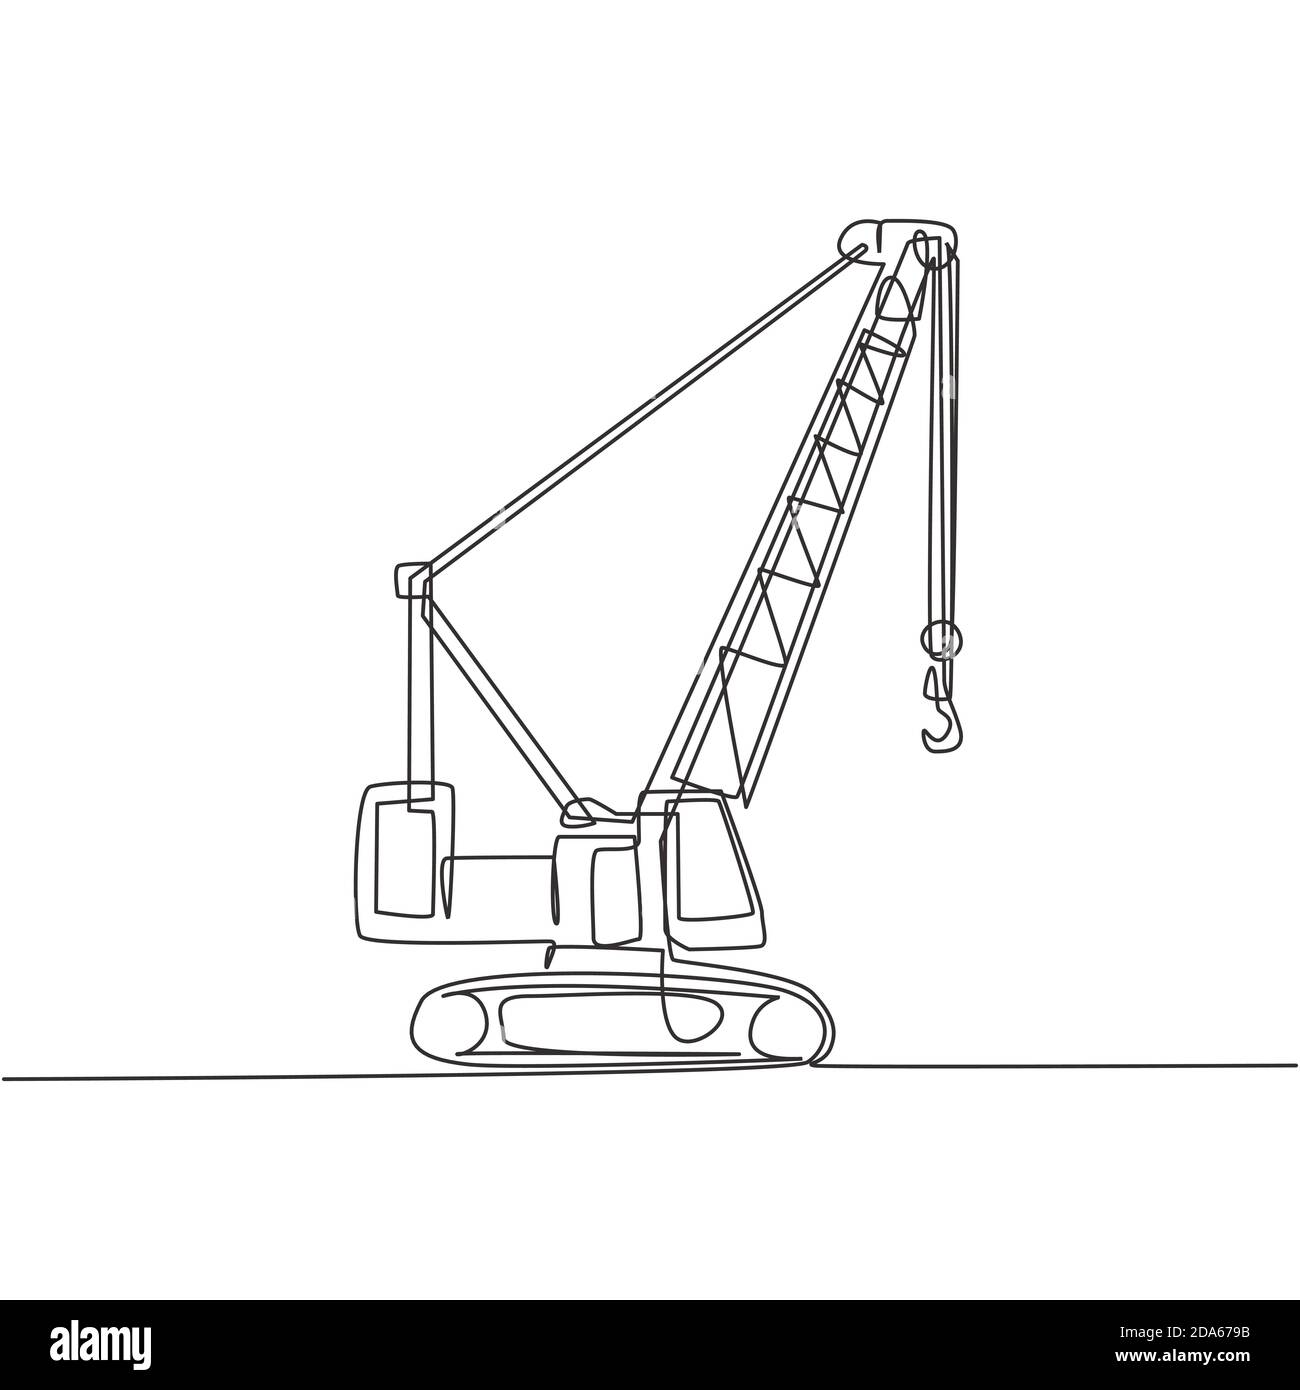 How to draw a Crane tutorial